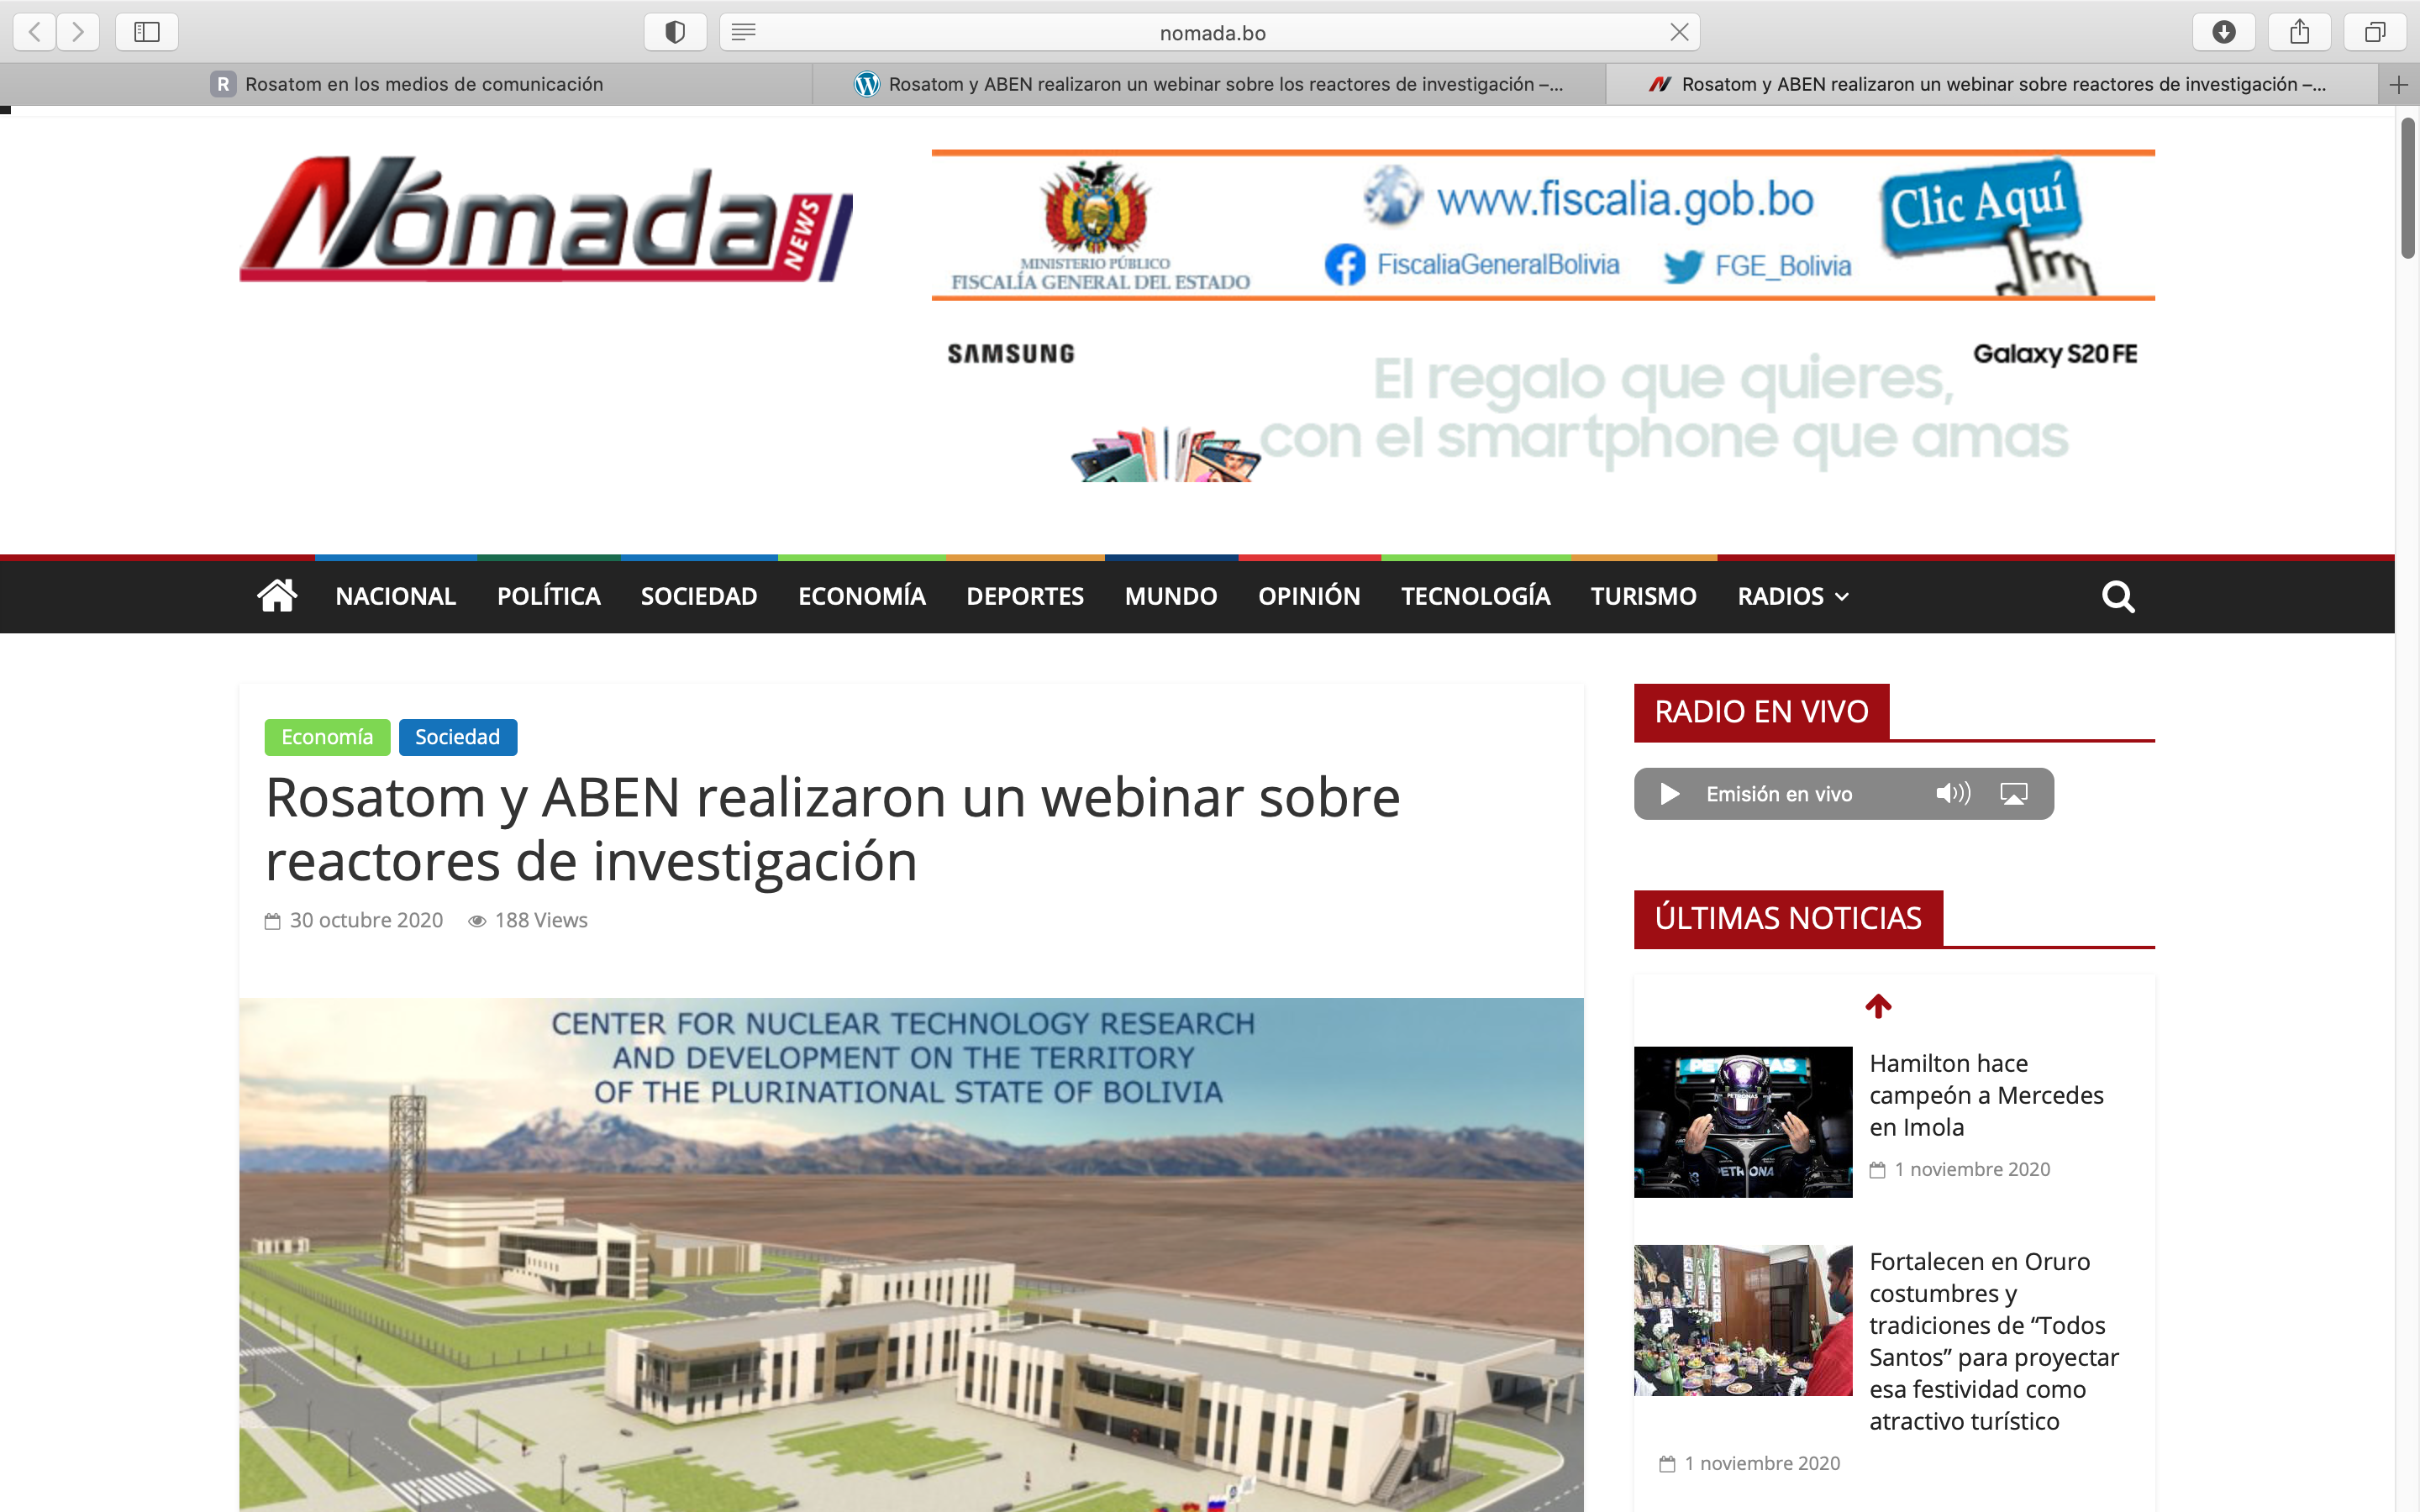 Rosatom y ABEN realizaron un webinar sobre reactores de investigación (Nomada News)